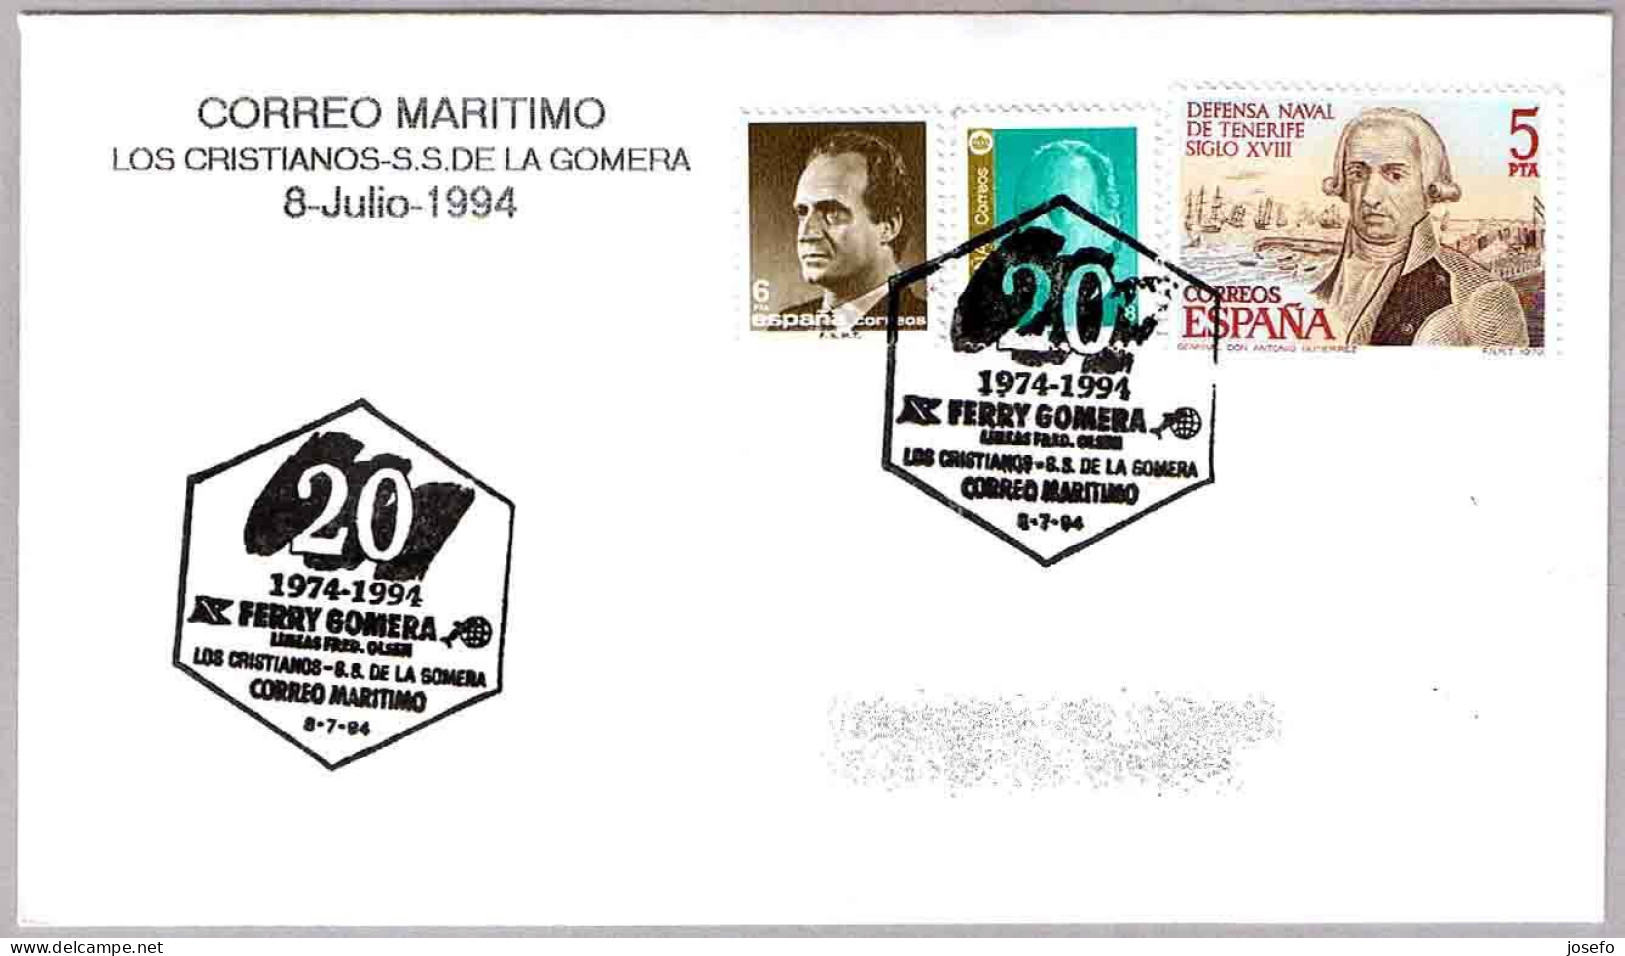 CORREO MARITIMO Los Cristianos - S.S.de La Gomera. FERRY GOMERA. 1994. Canarias - Post